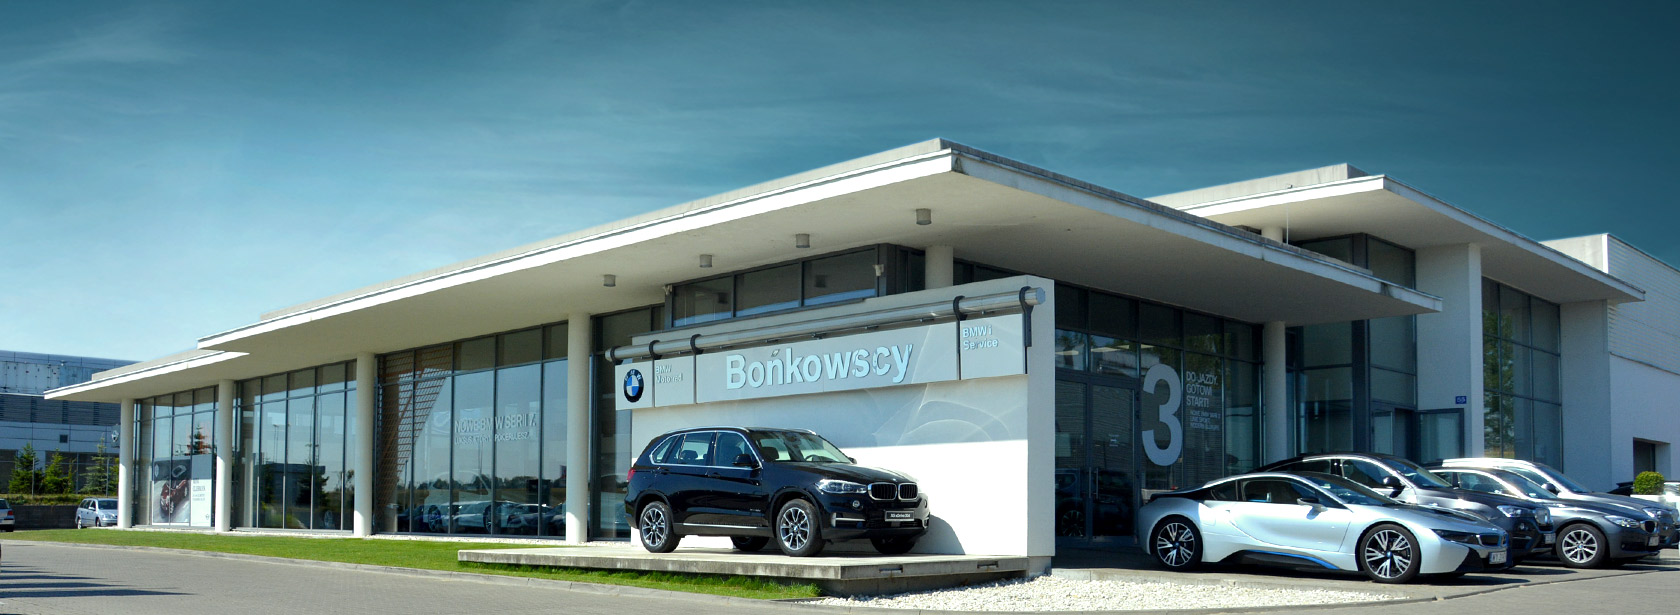 Dealer BMW Serwis BMW Dealer BMW Bońkowscy Szczecin